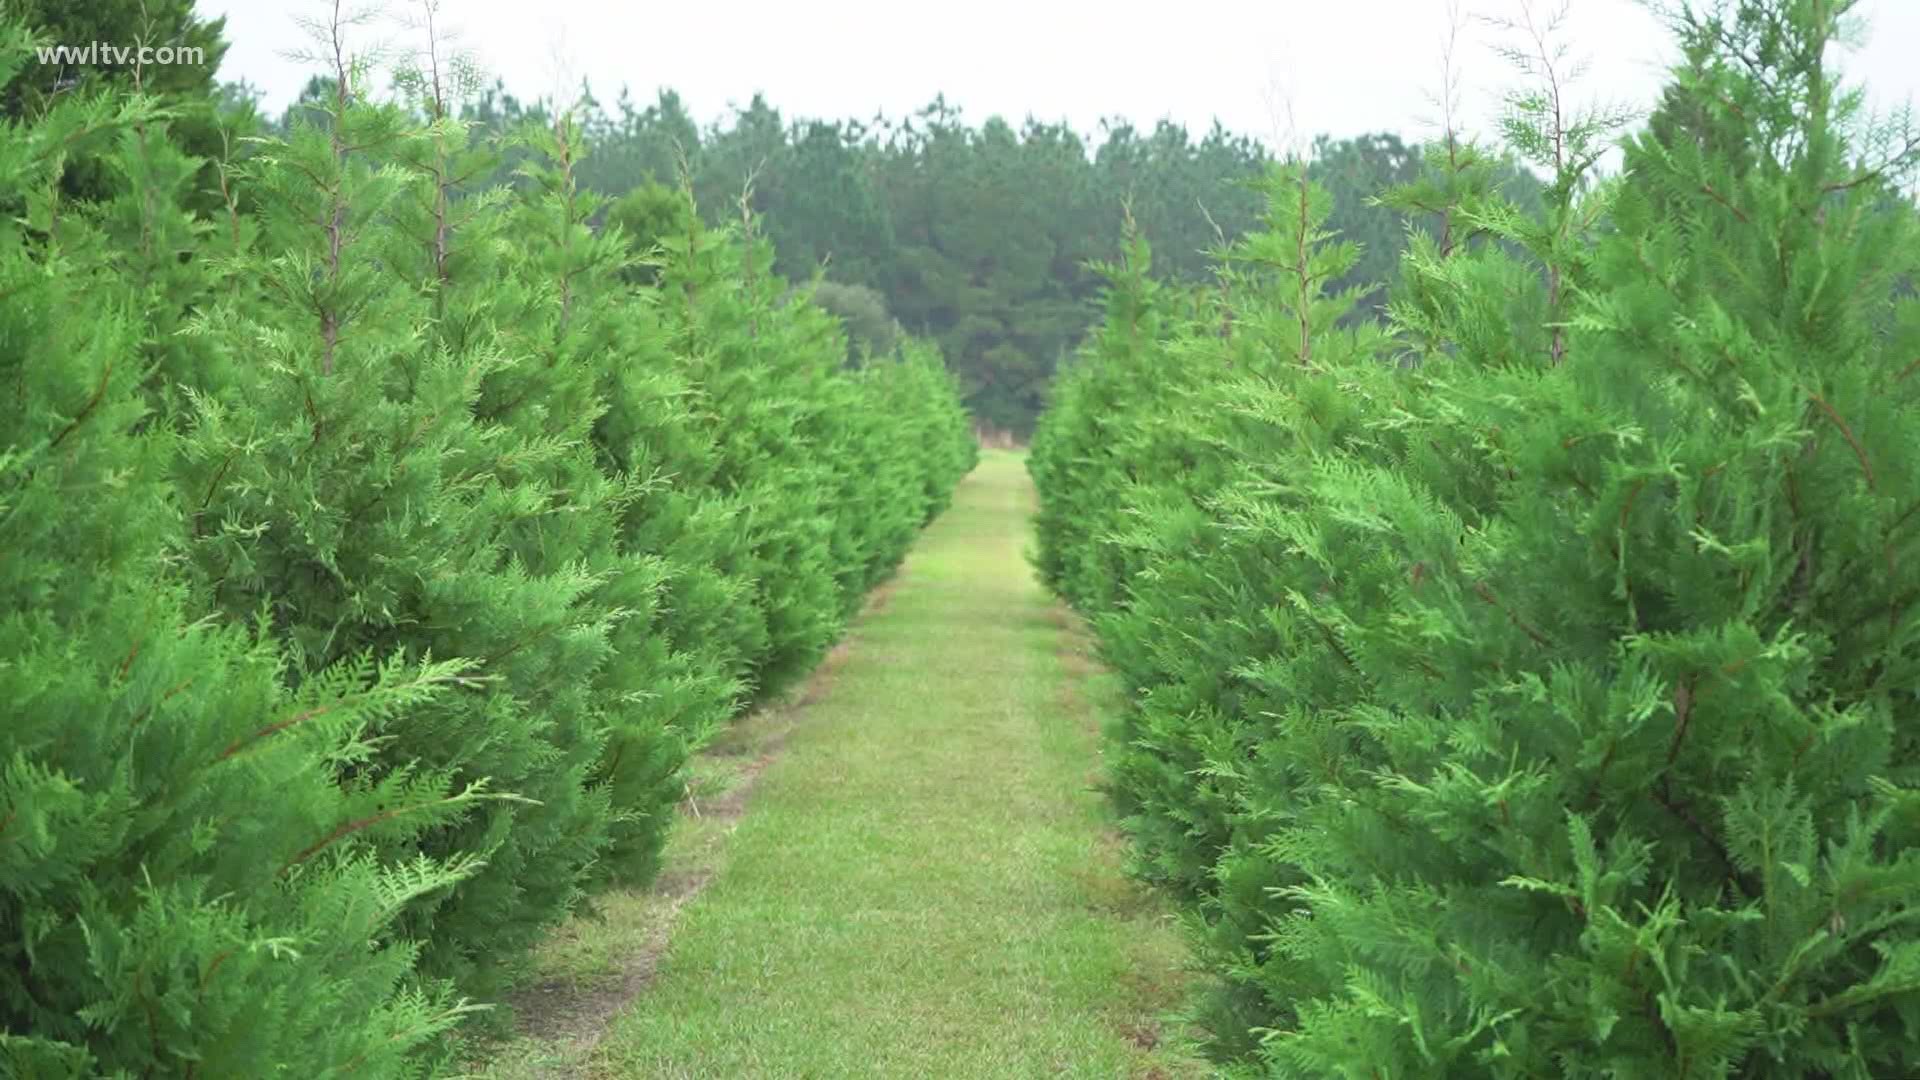 Northshore Christmas tree farm opens for holiday season